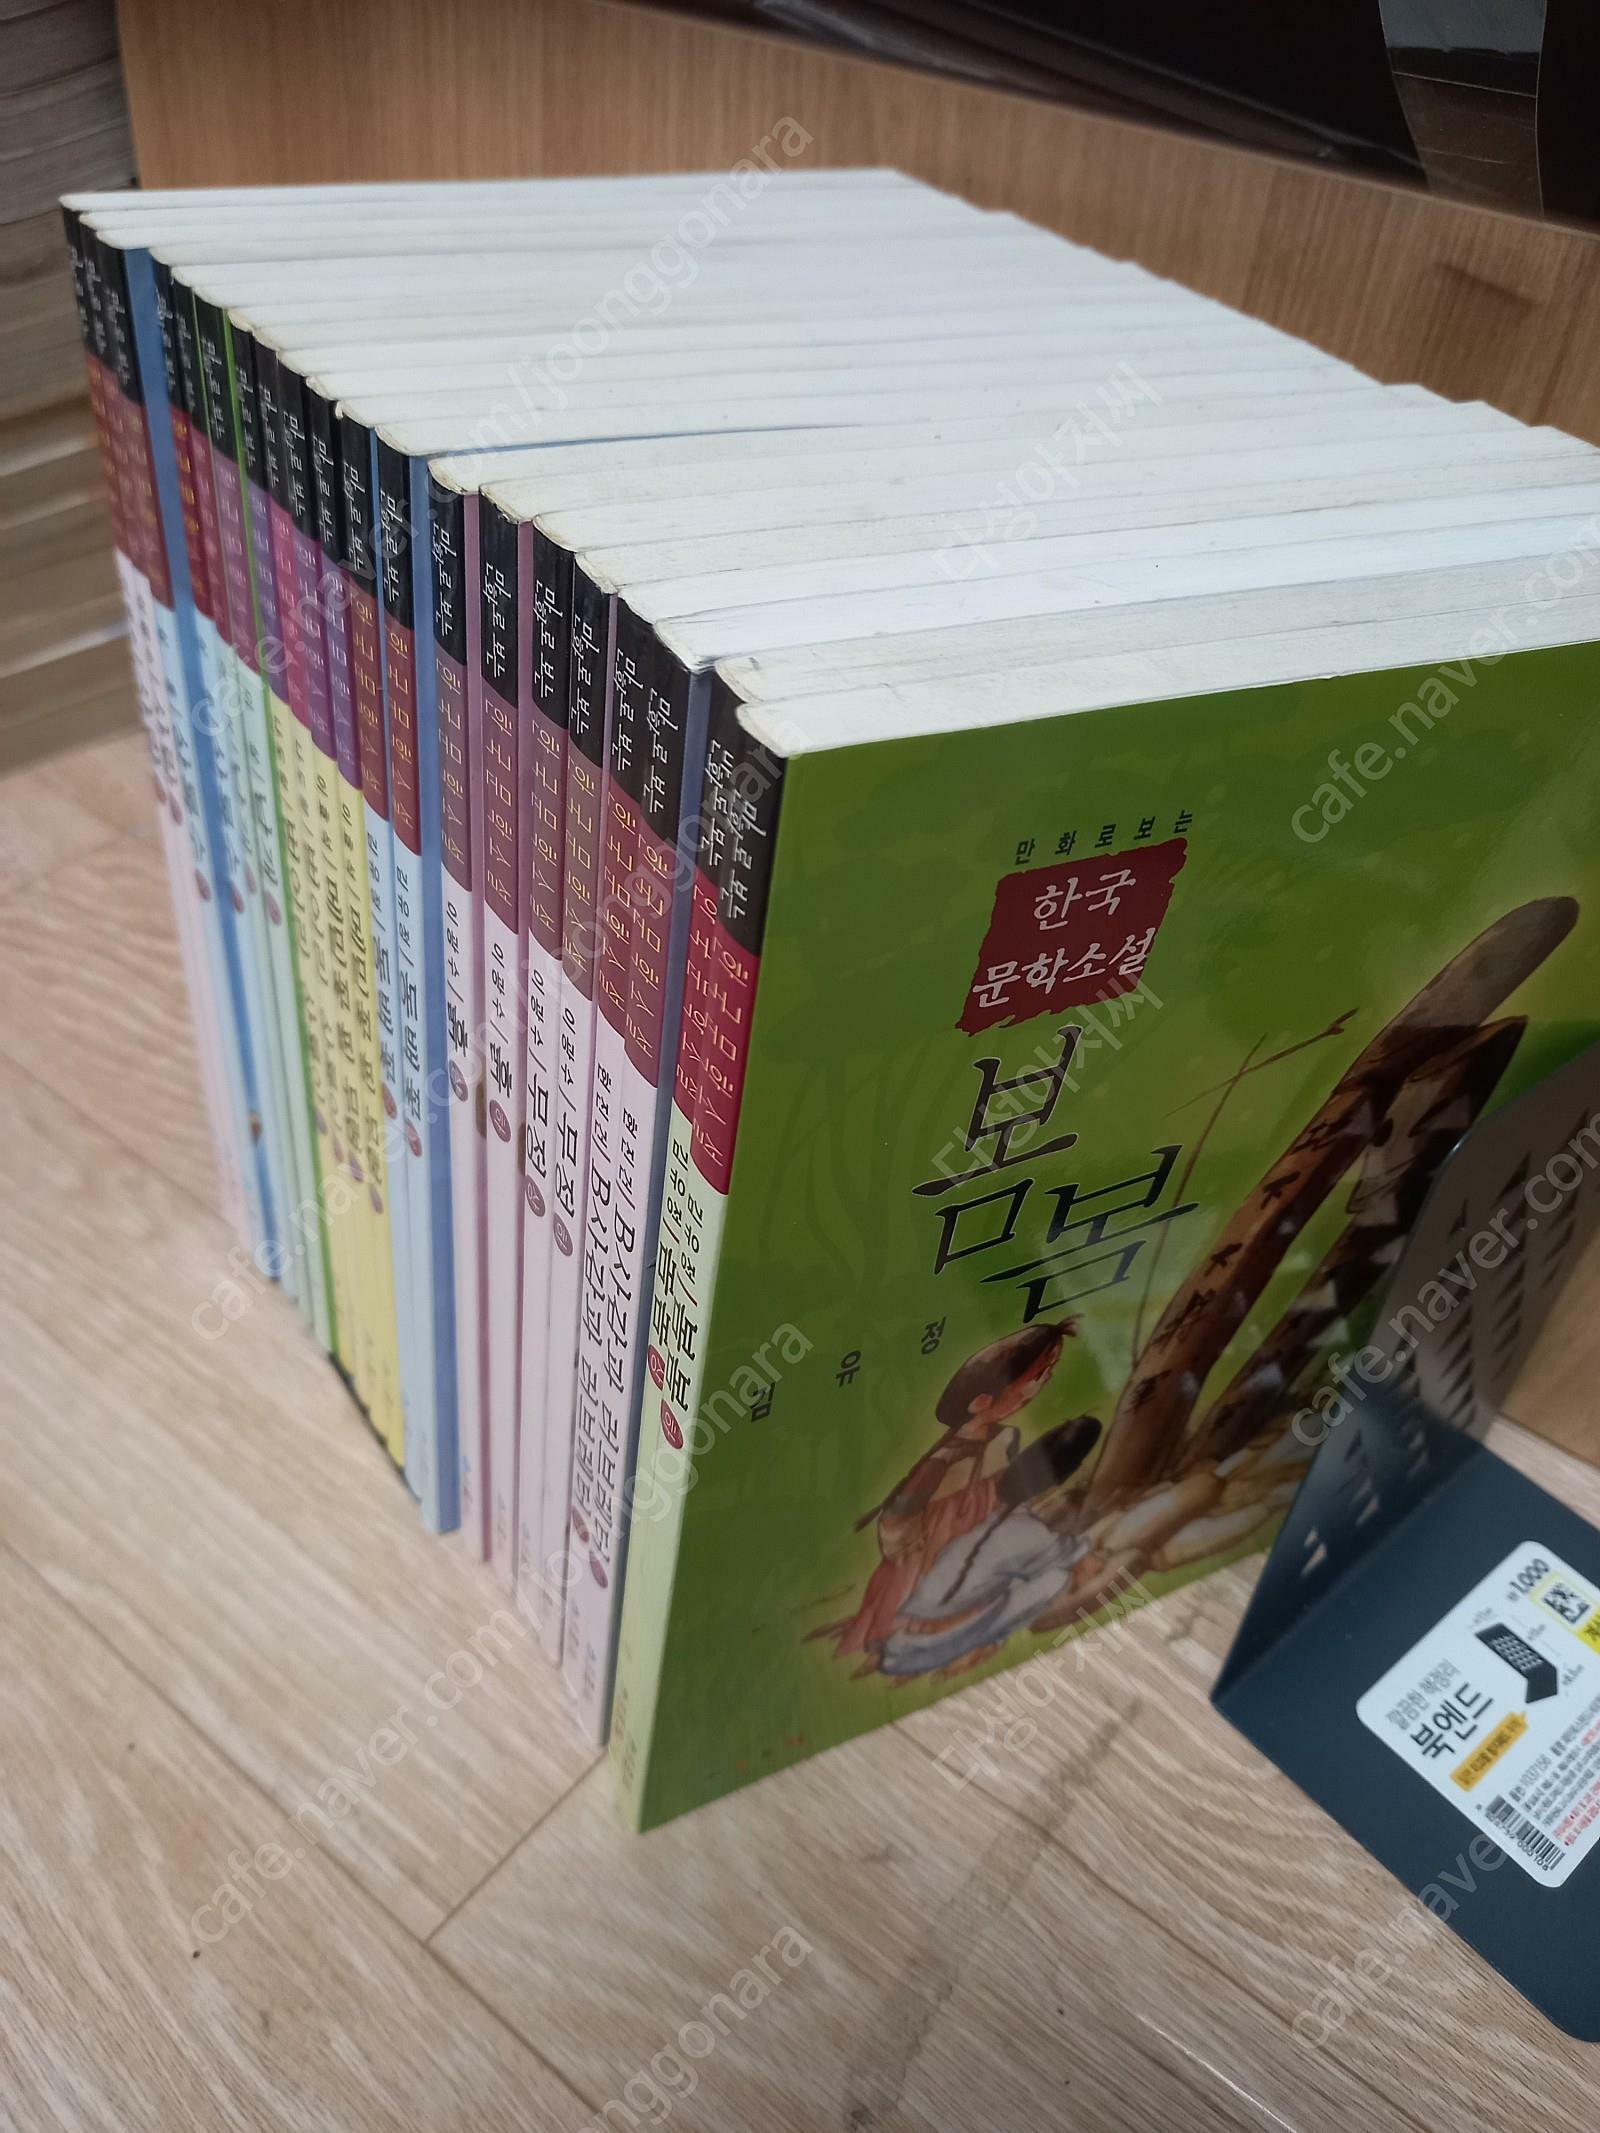 [중고] 만화로 보는 한국문학소설 20권 세트/샘 출판,희귀/ 배송비 포함 팝니다